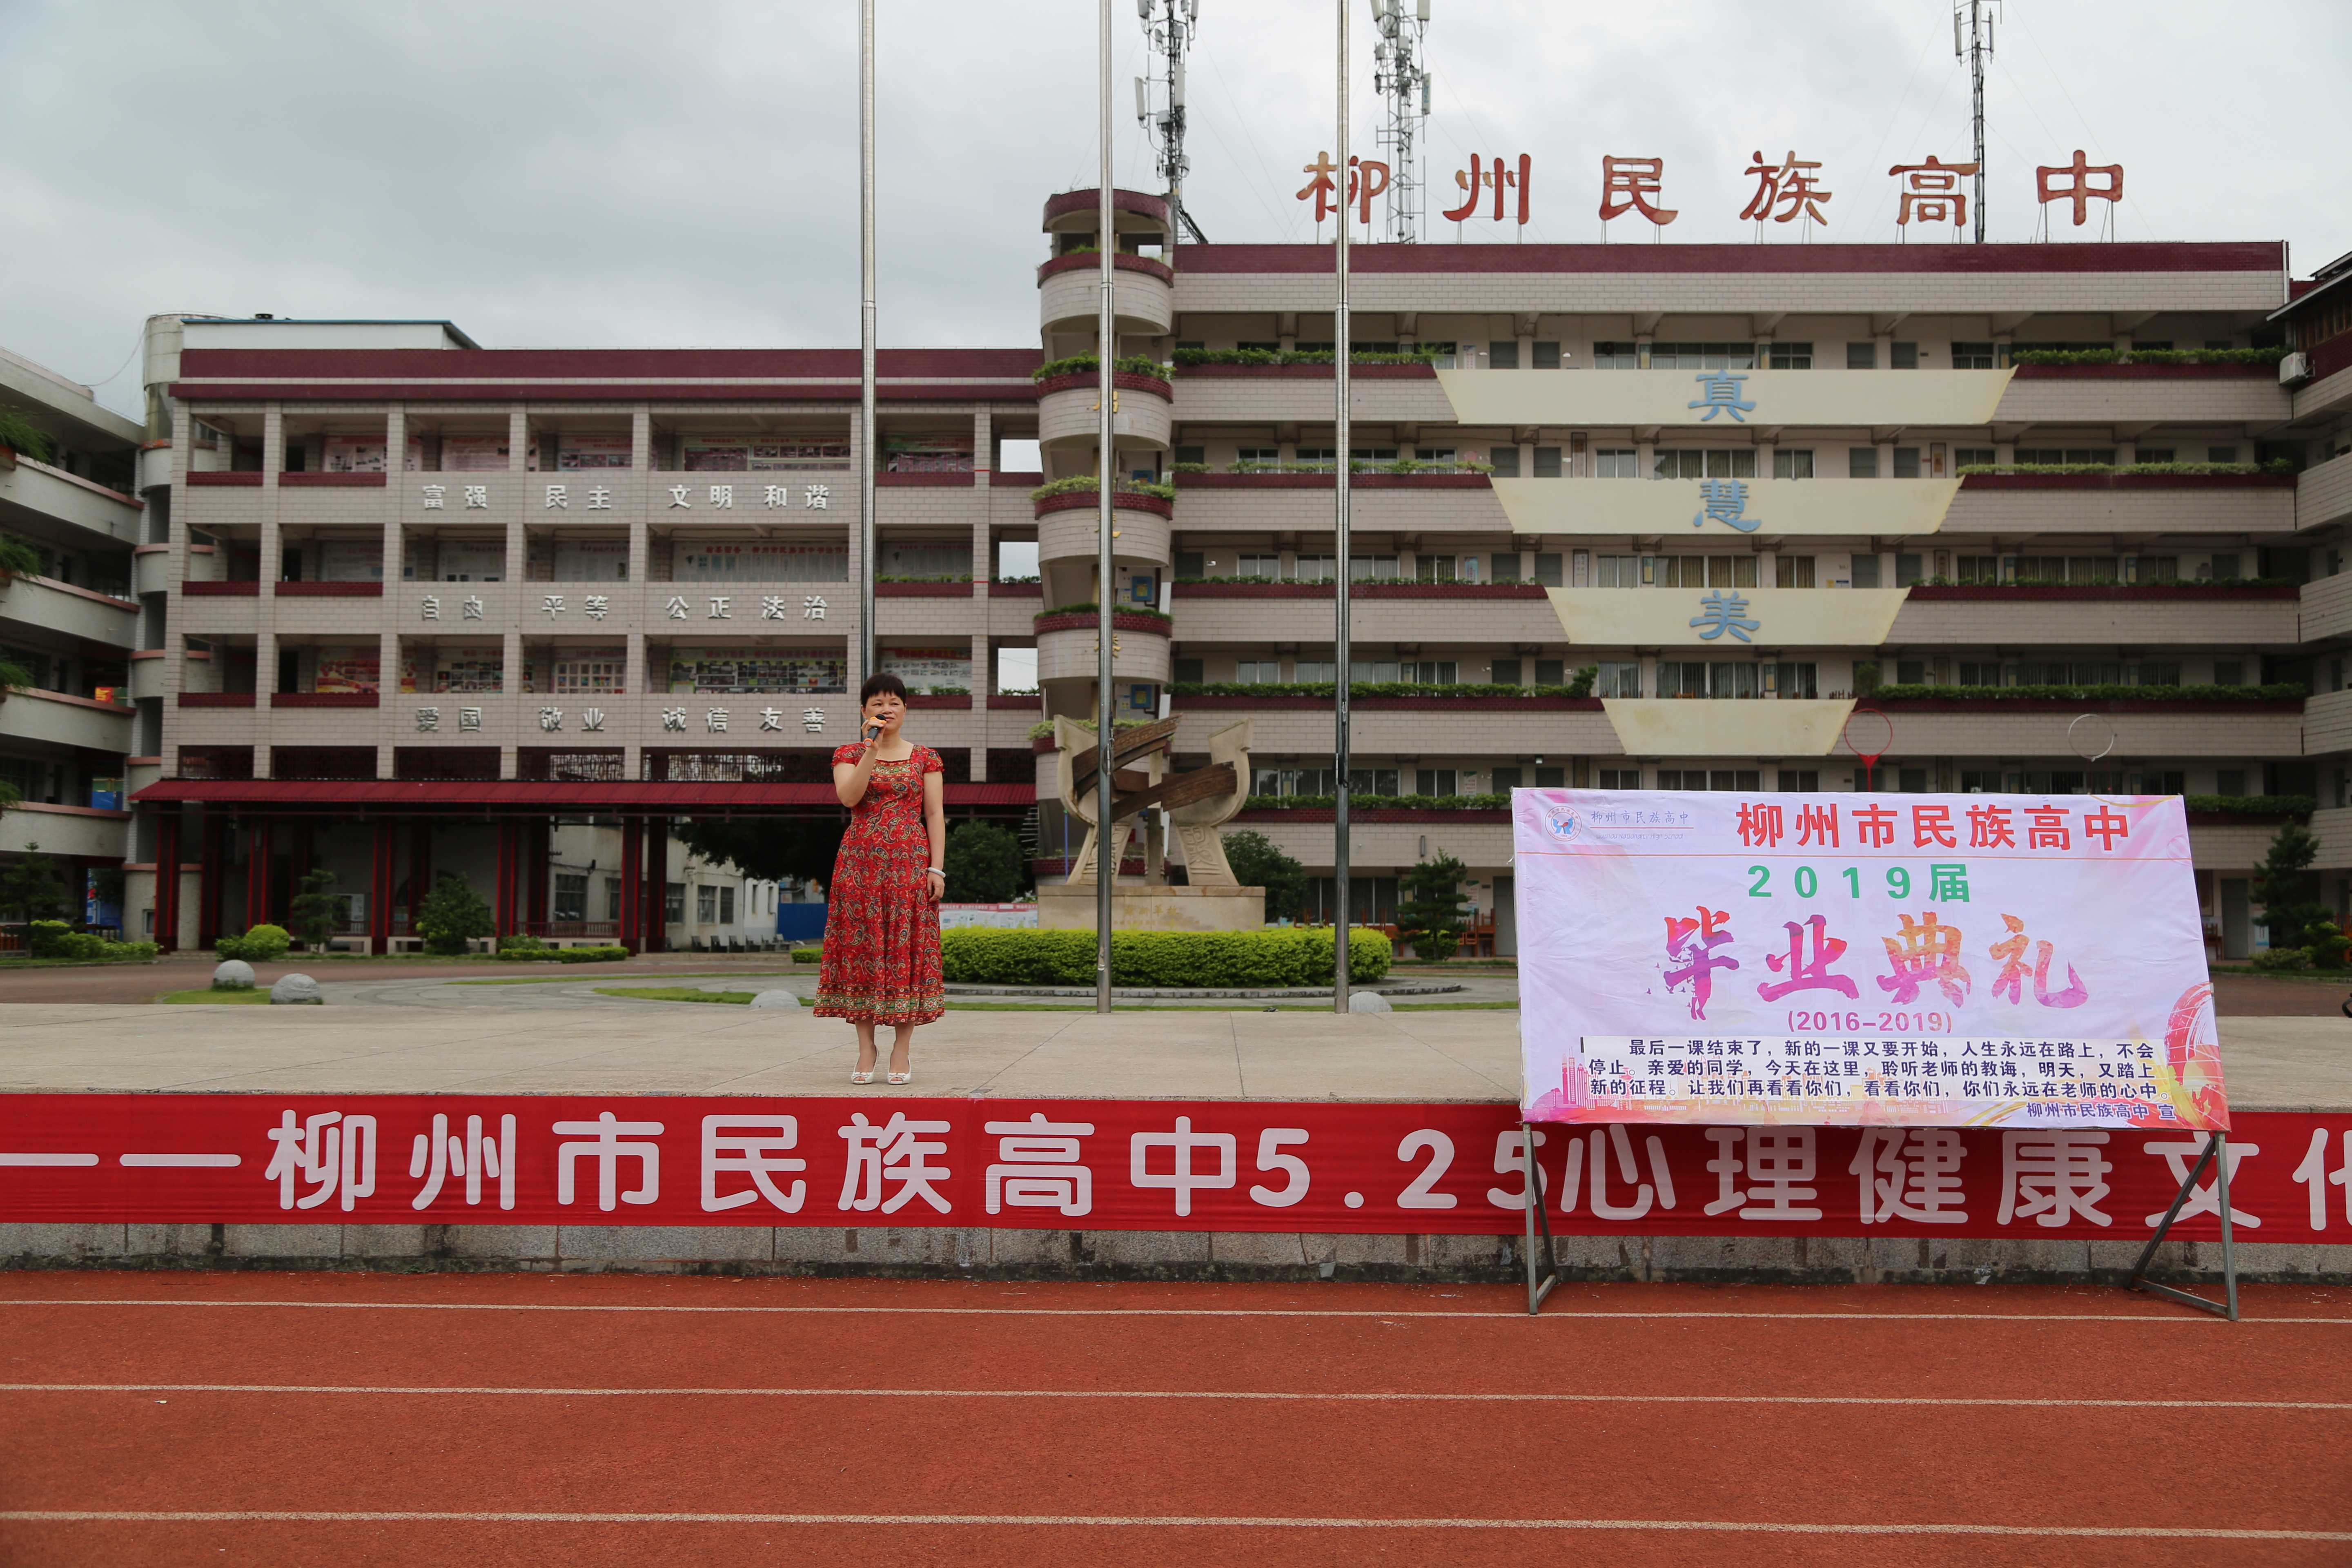 柳州民族高中校服图片